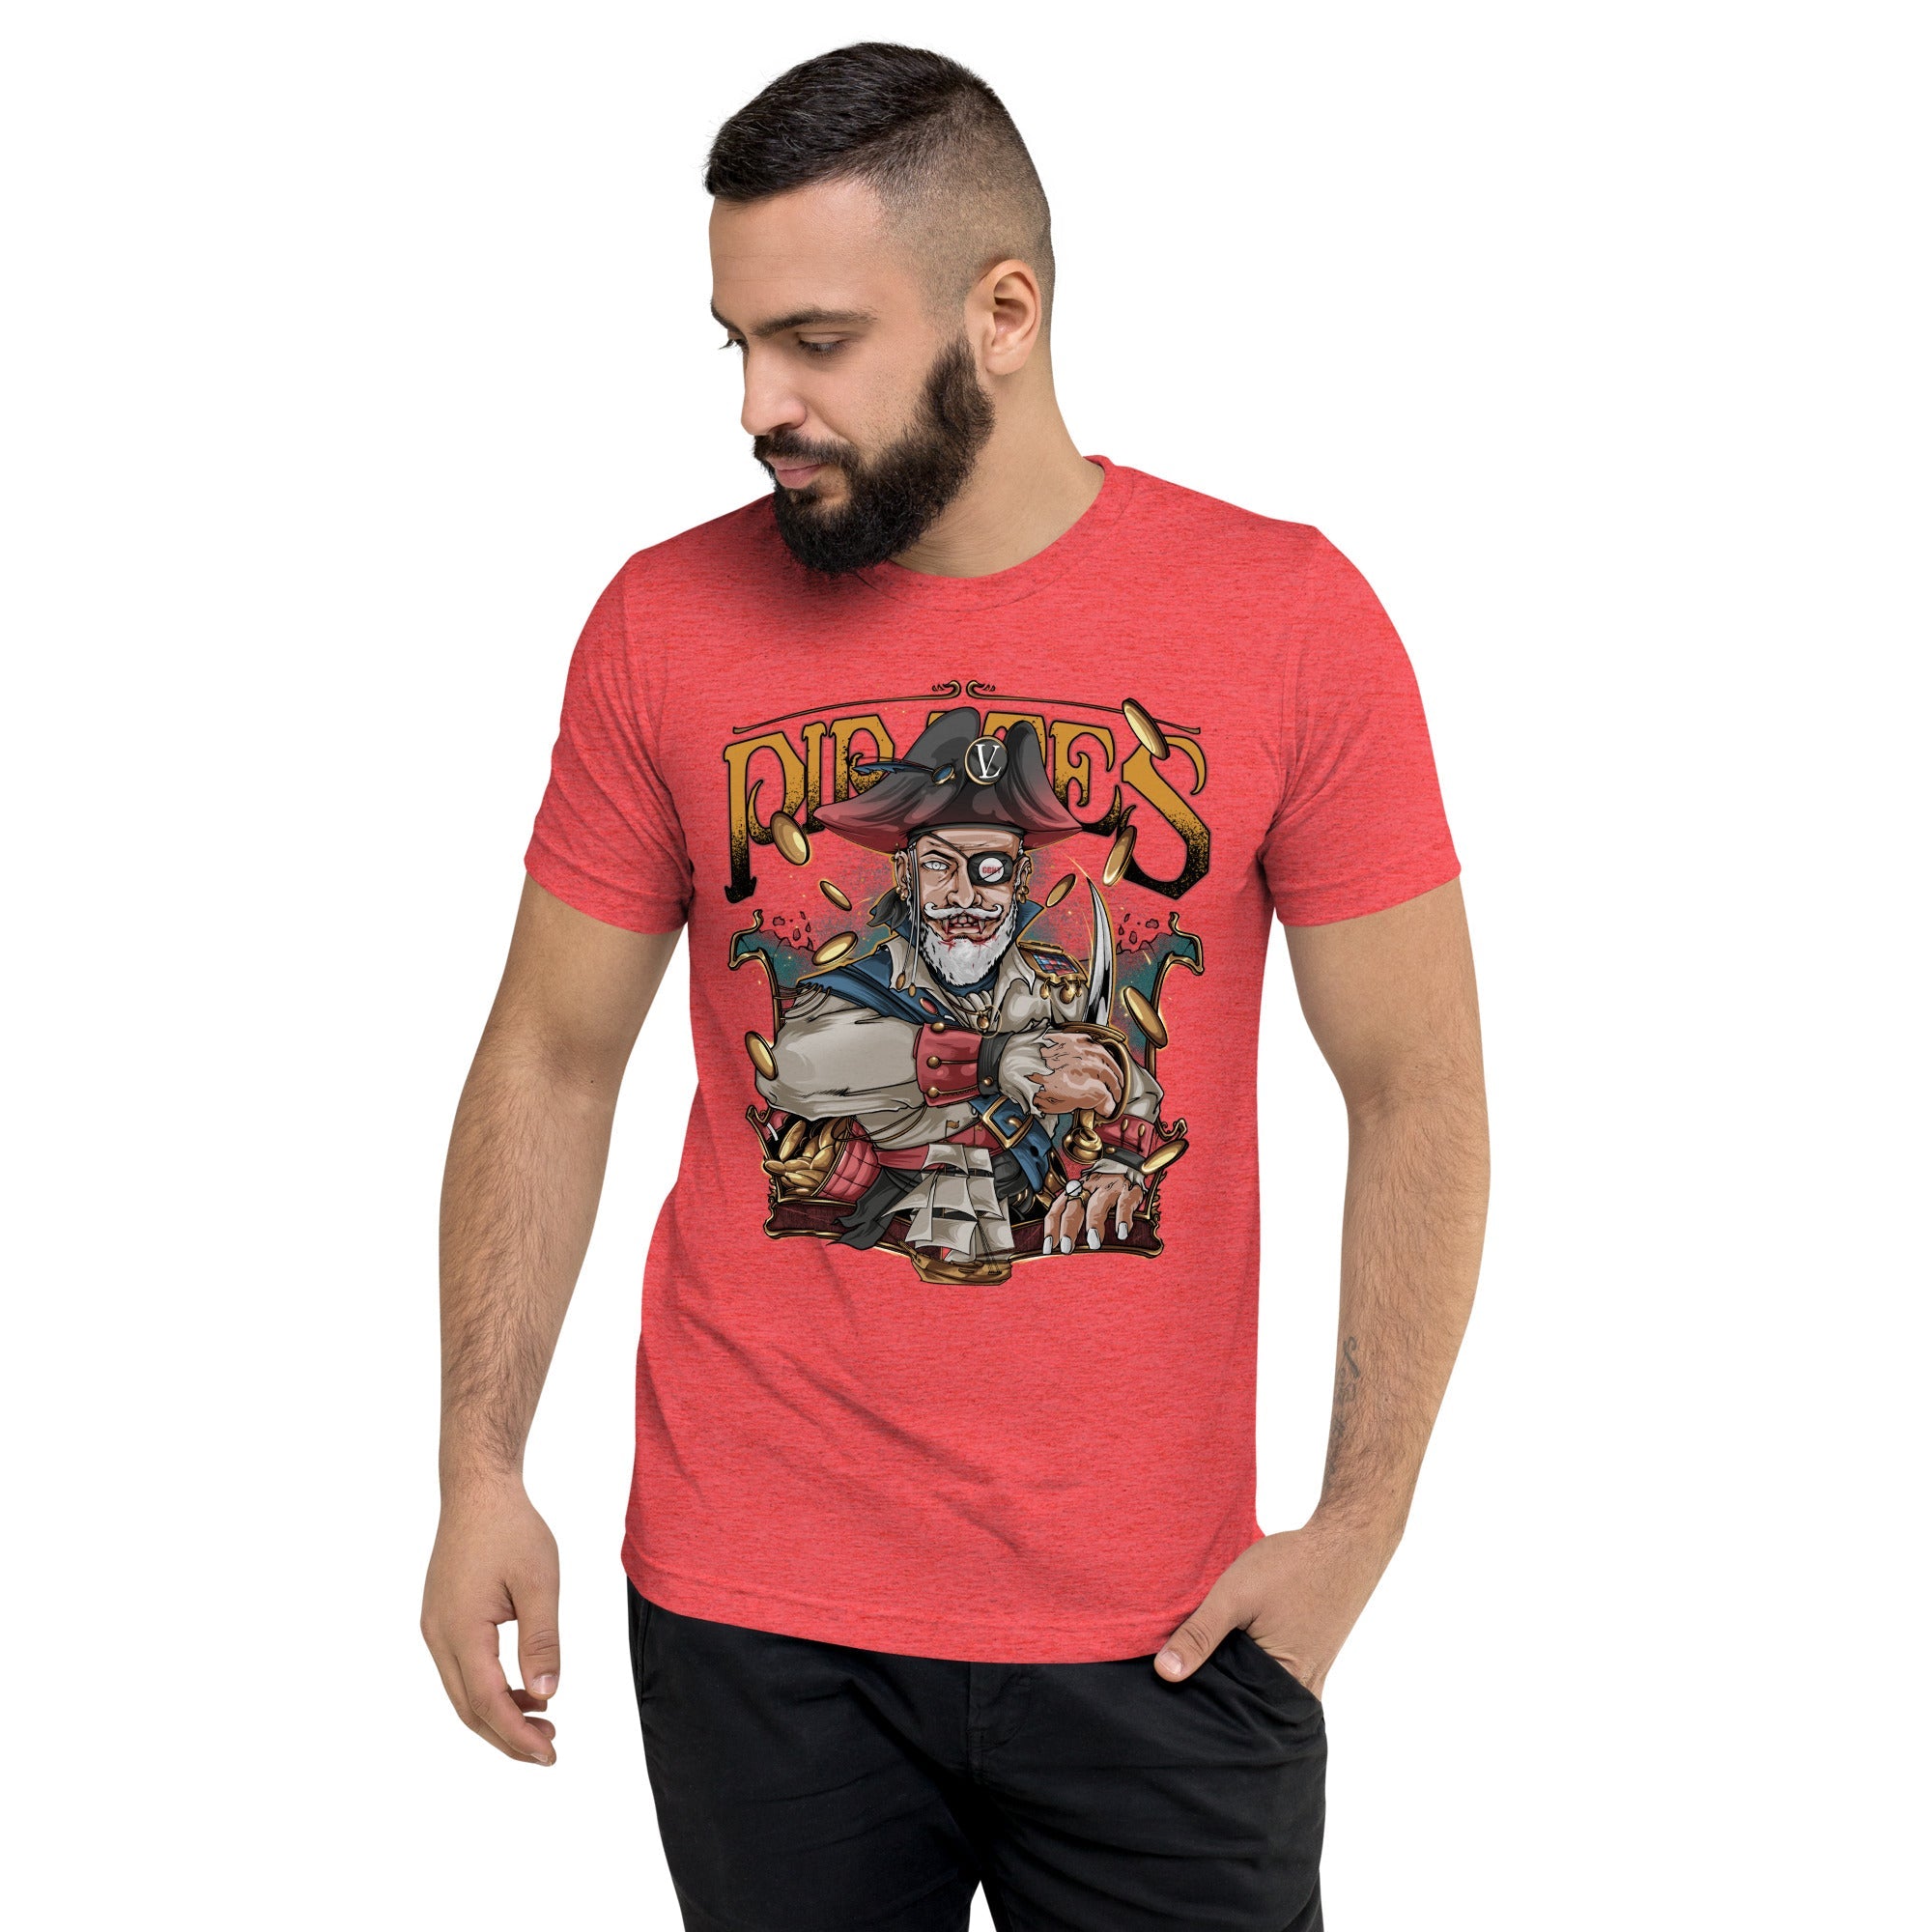 GBNY Red Triblend / XS Vamp Life X GBNY "Pirates King" T-shirt - Men's 4461701_6576